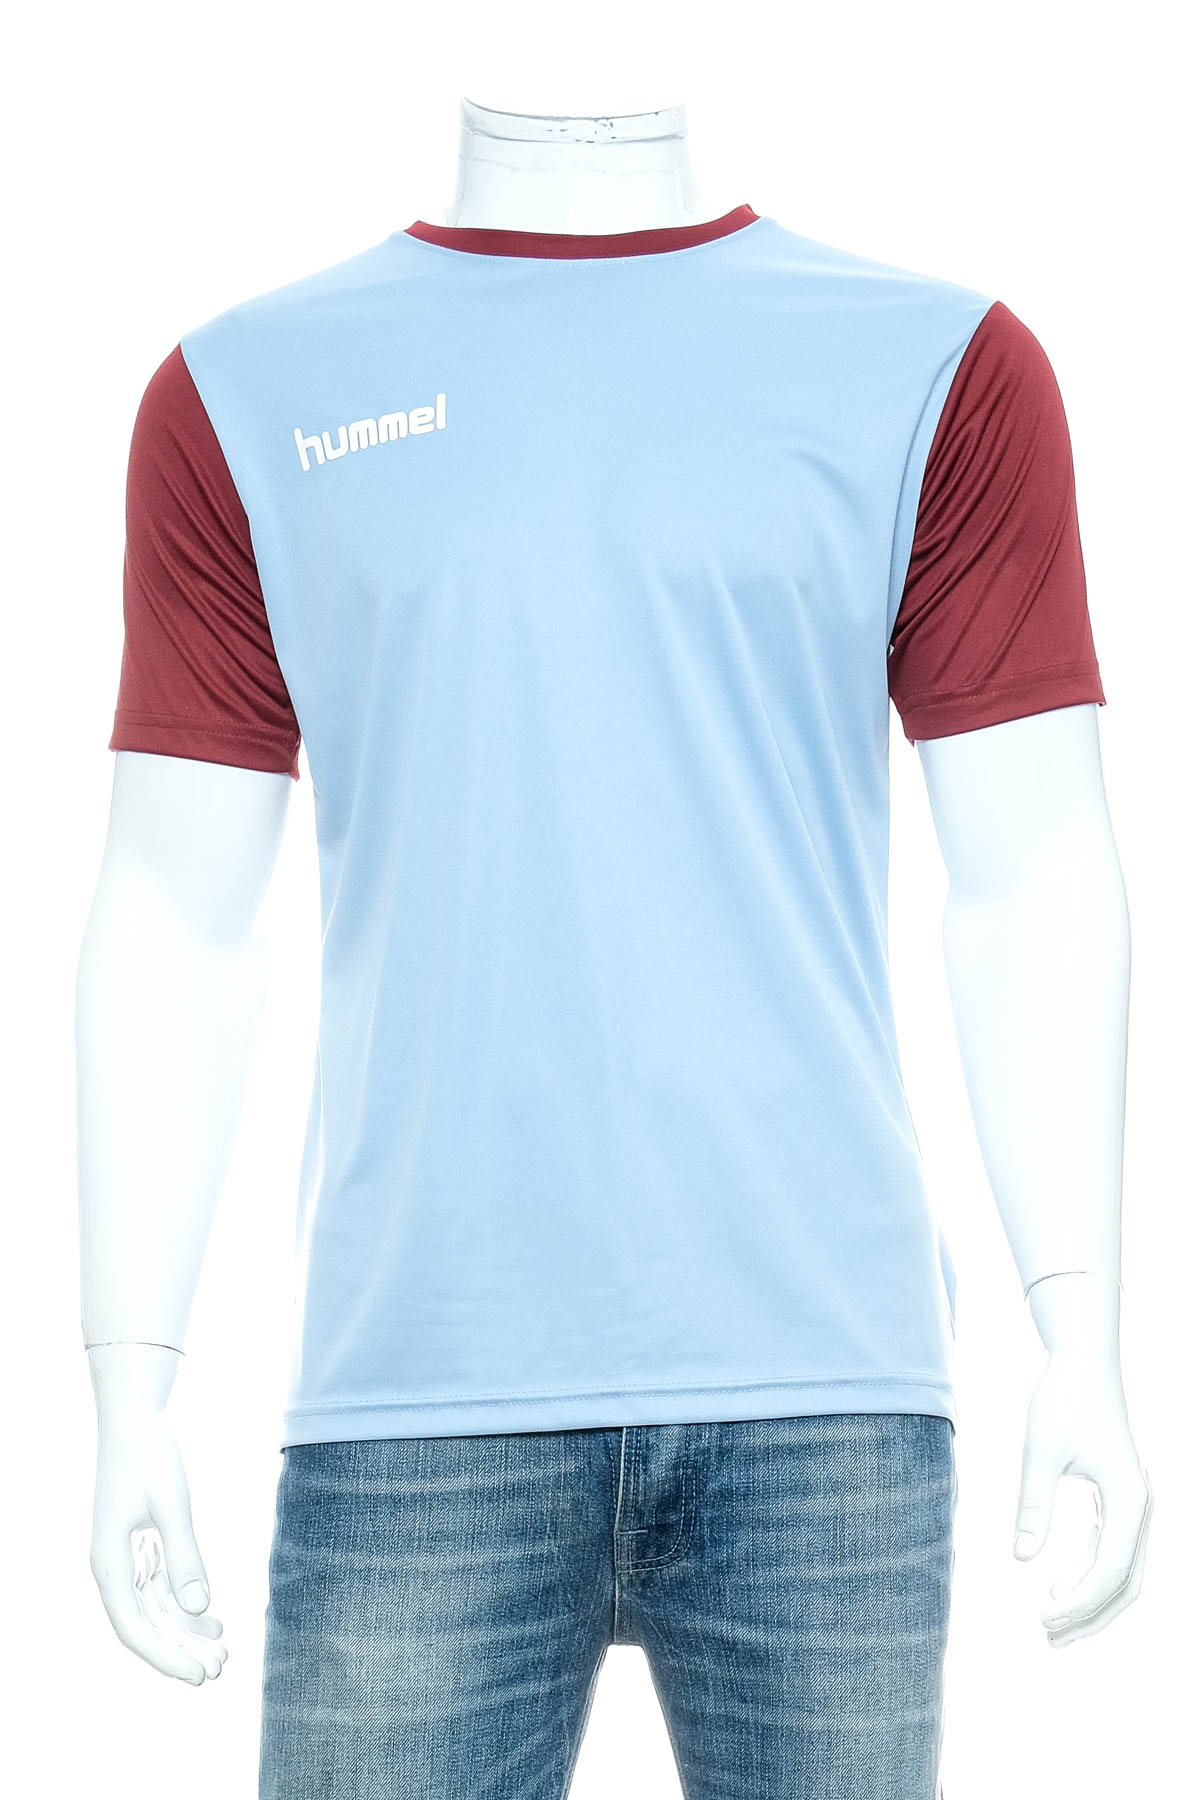 Αντρική μπλούζα - Hummel - 0